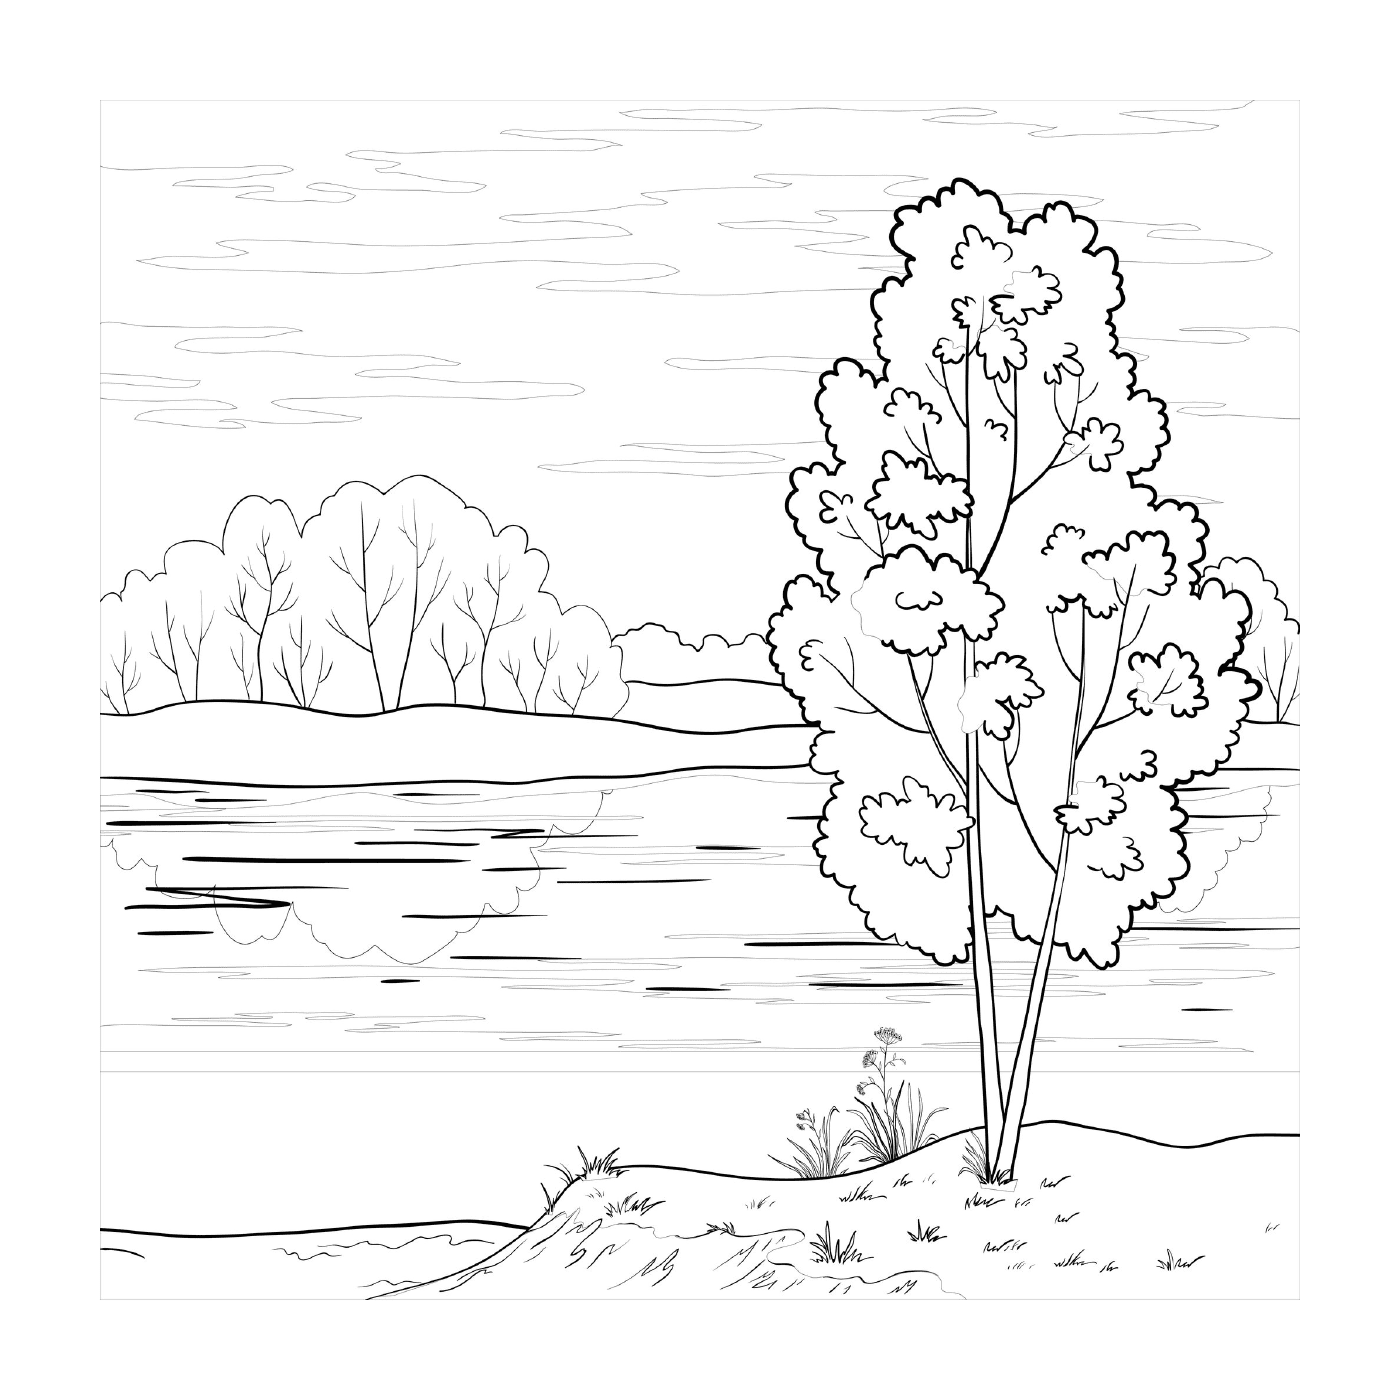   Un arbre près d'un lac 